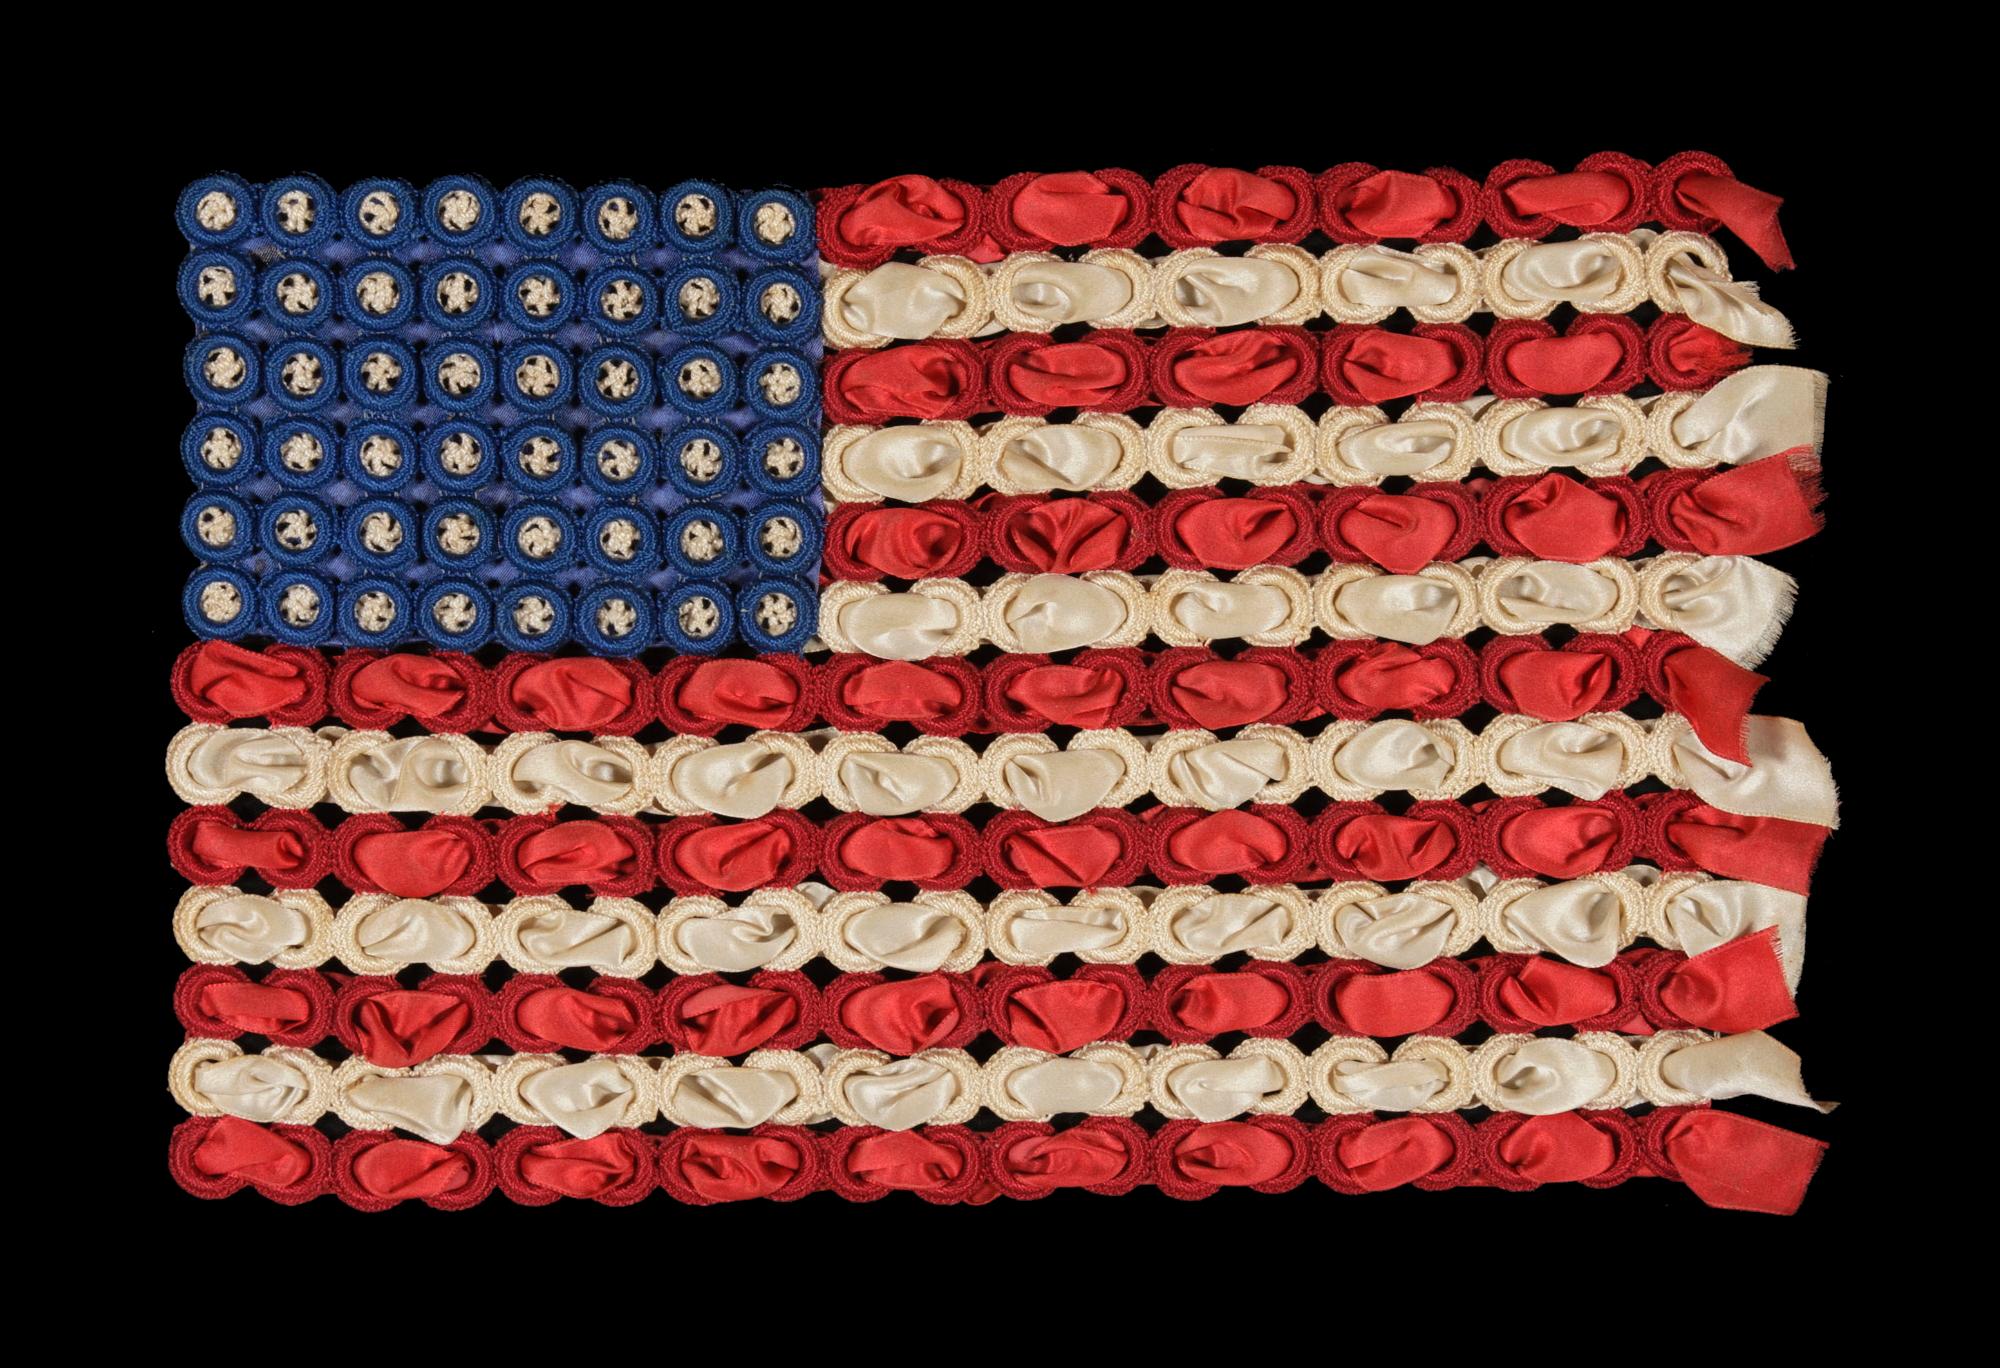 48 gehäkelte Sterne auf einer sehr grafischen, dreidimensionalen Flagge aus Seidenband und gehäkelten Ringen, Erster Weltkrieg (Beteiligung der USA 1917-18)

In der Zeit zwischen dem Spanisch-Amerikanischen Krieg (1898) und den 1920er Jahren